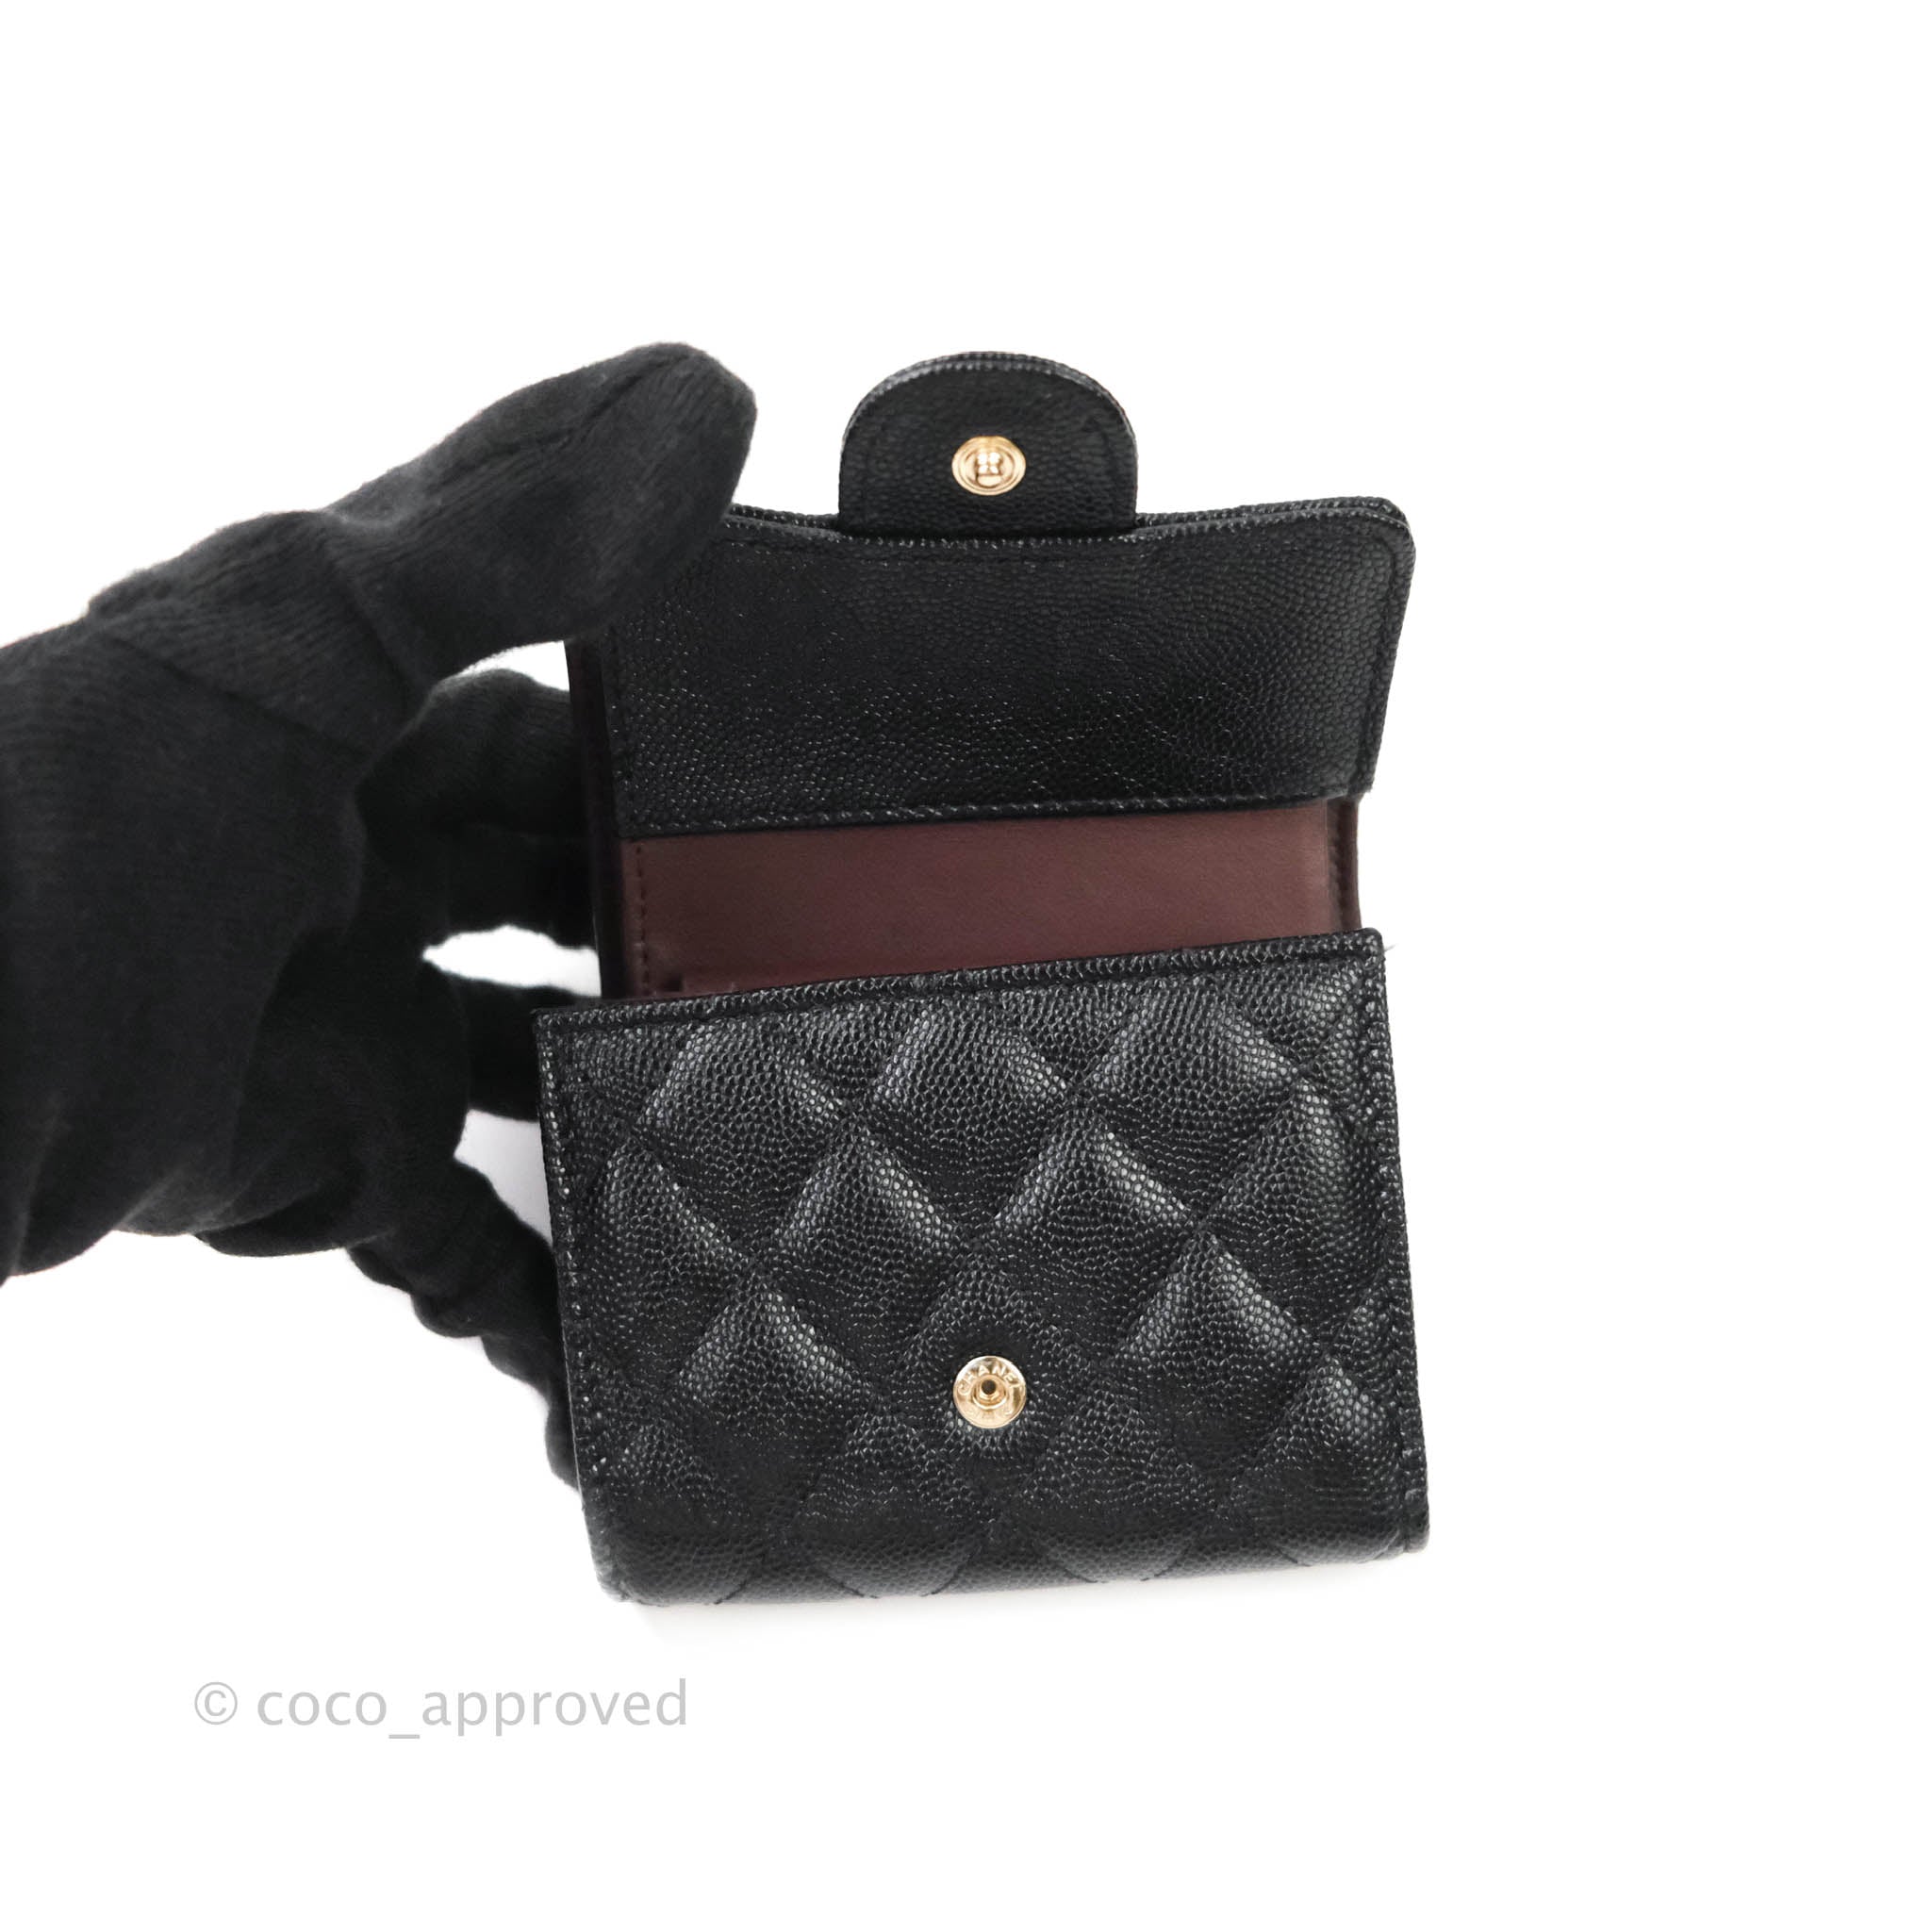 Classic small flap wallet - Lambskin & gold-tone metal, black